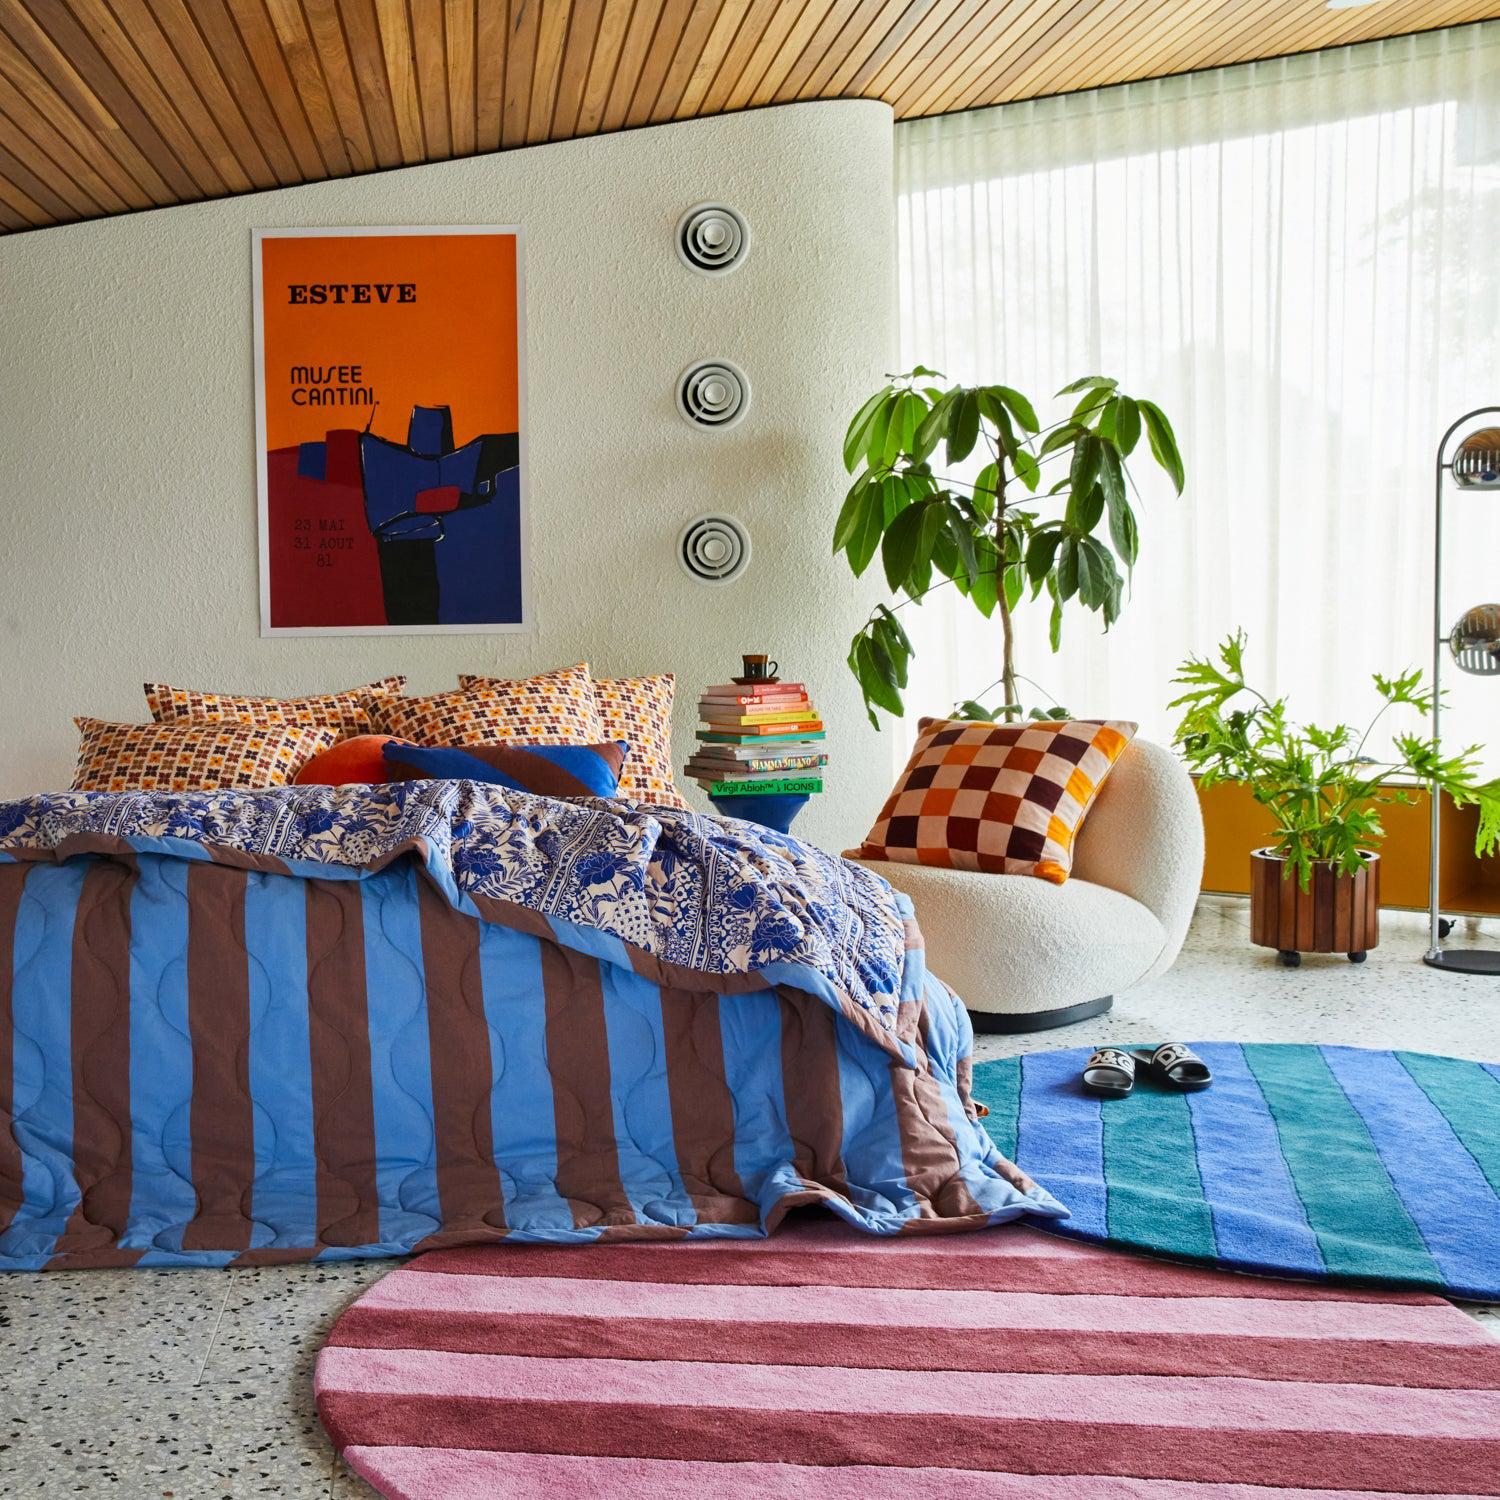 Blanca Carpet Rug - Cosmos - 220 cm Diameter-Floor Rugs & Doormats-PLAY by Sage & Clare-The Bay Room